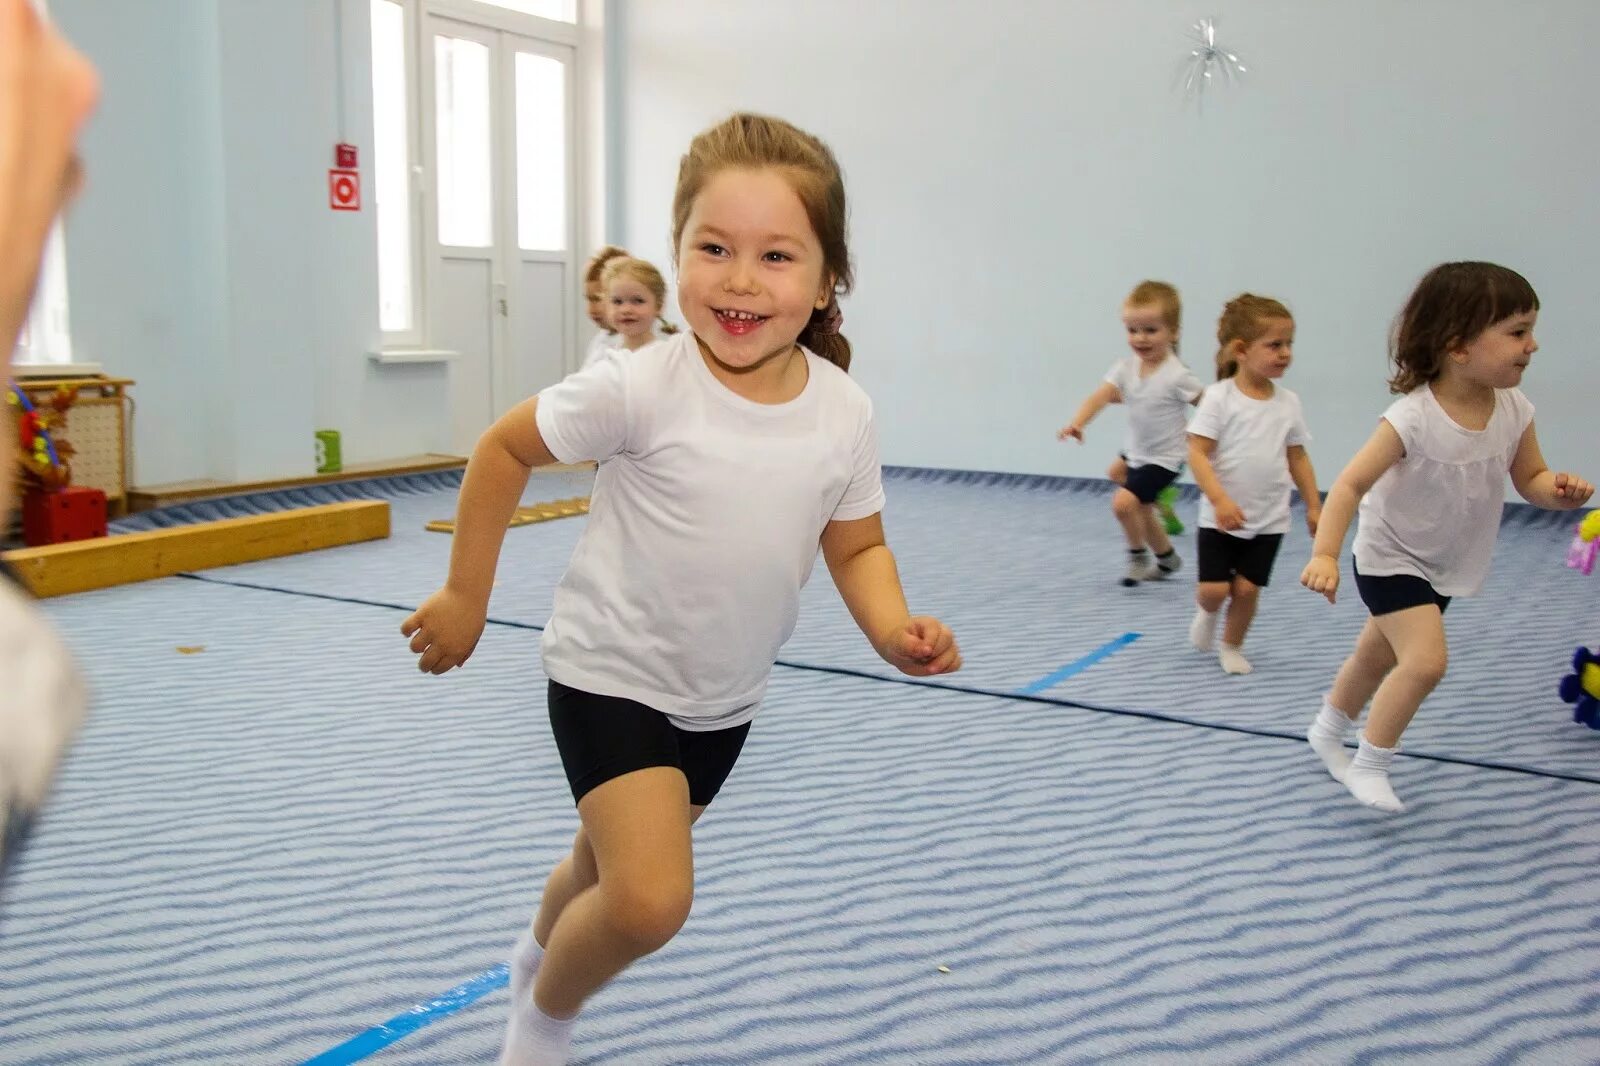 Развитие движений средняя. Физкультура в детском саду. Спортивные занятия в детском саду. Дошкольники на занятиях физкультурой. Бег детей в саду.